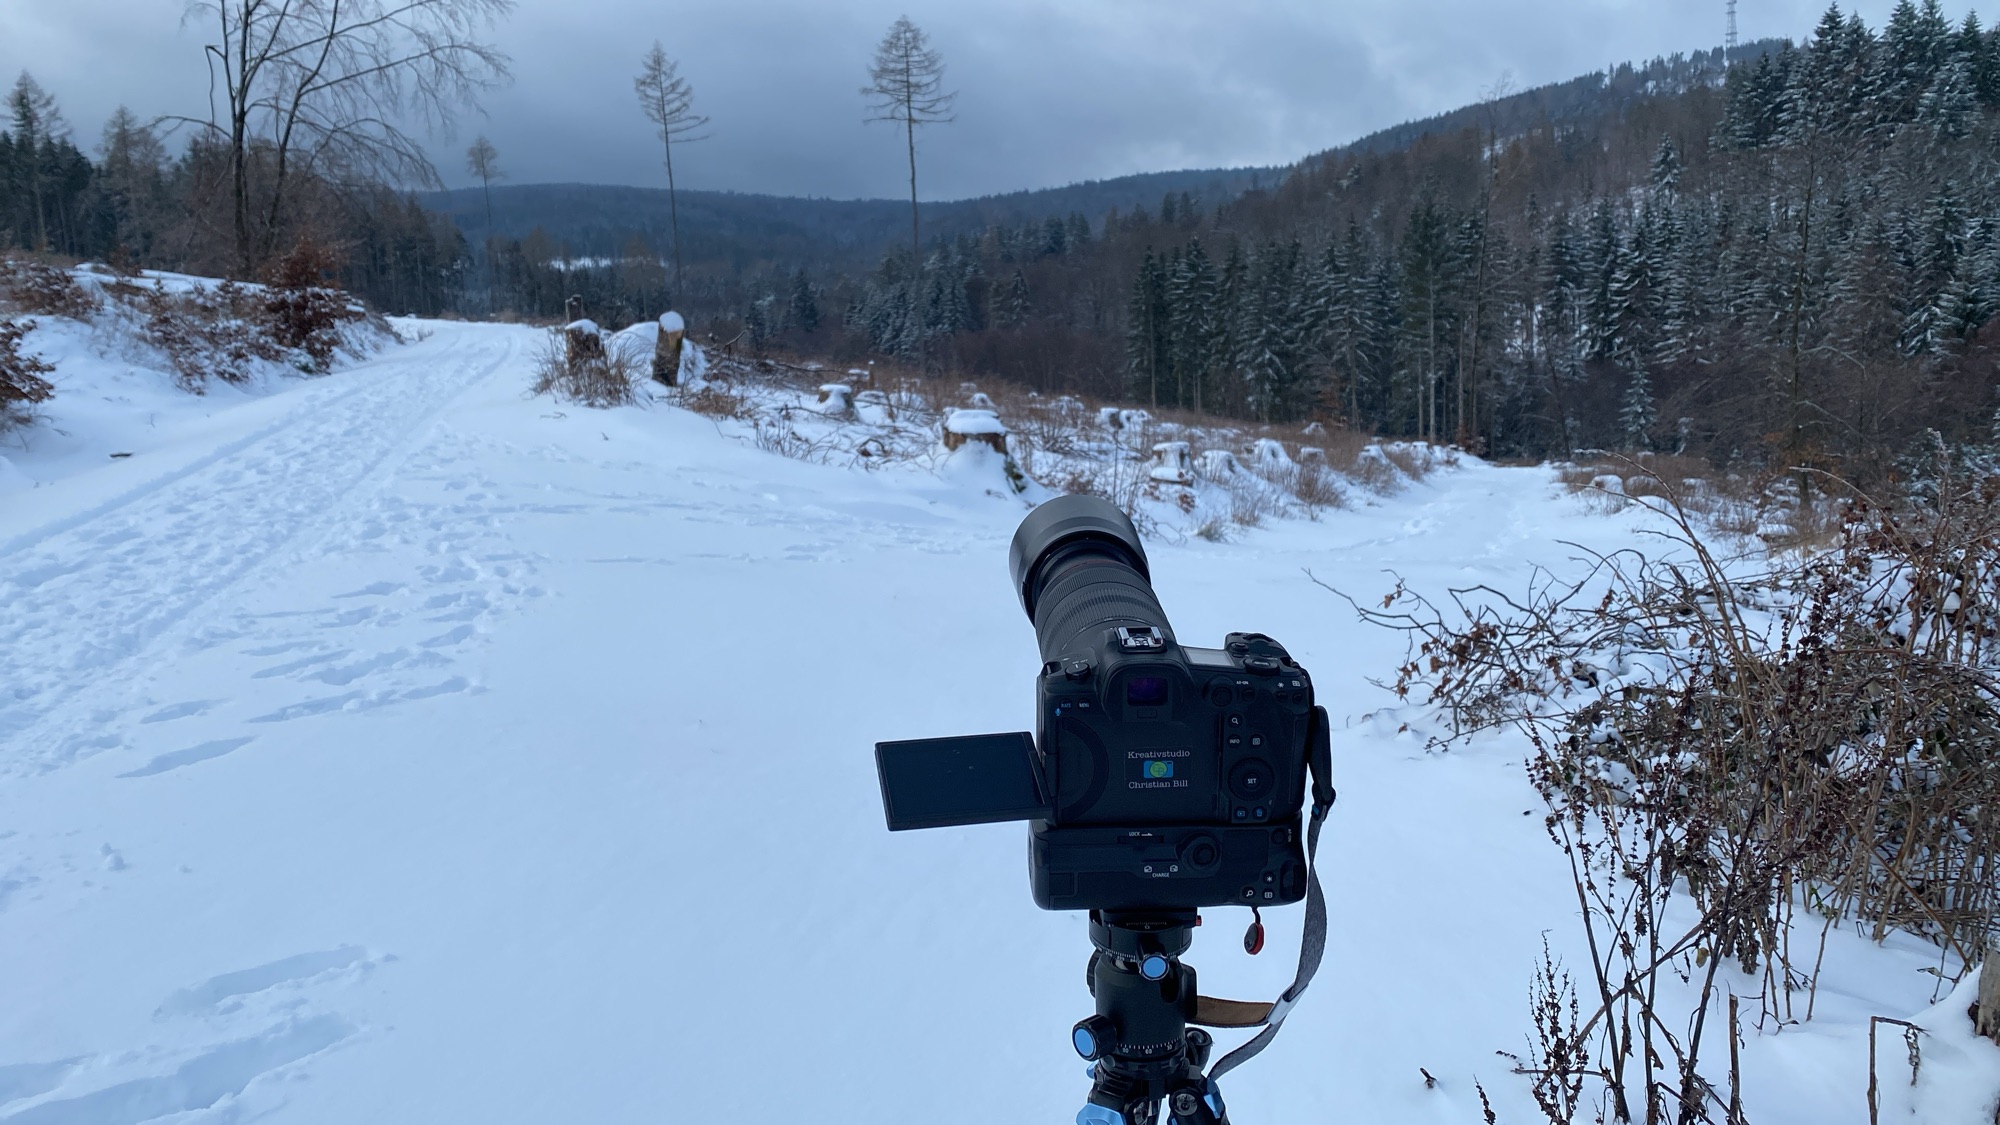 Kamera Canon R5 auf Stativ K&F-Conzept beim Fotografieren eines einzelnen Baumes in Schneelandschaft